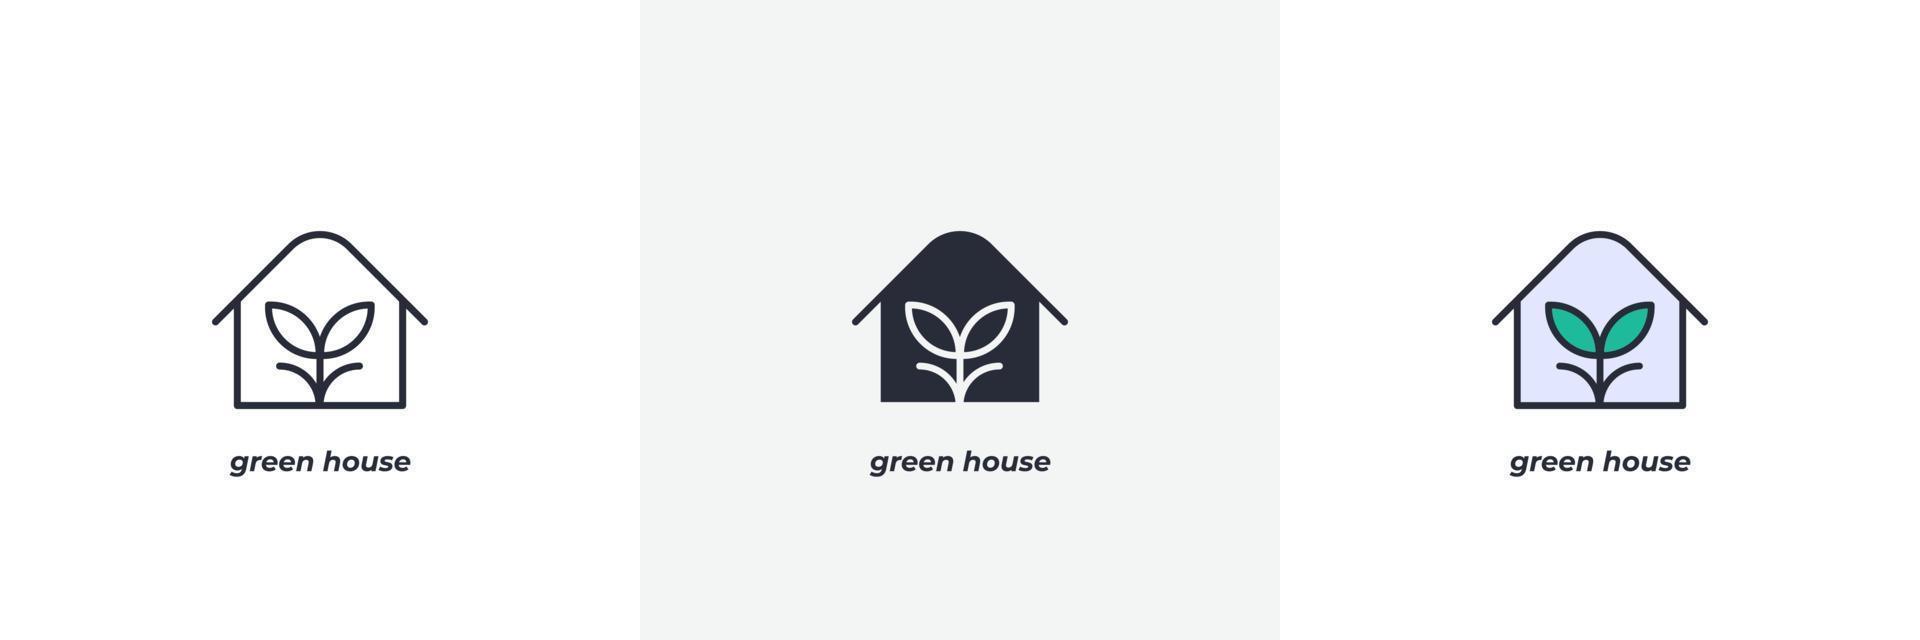 grön hus ikon. linje, fast och fylld översikt färgrik version, översikt och fylld vektor tecken. aning symbol, logotyp illustration. vektor grafik